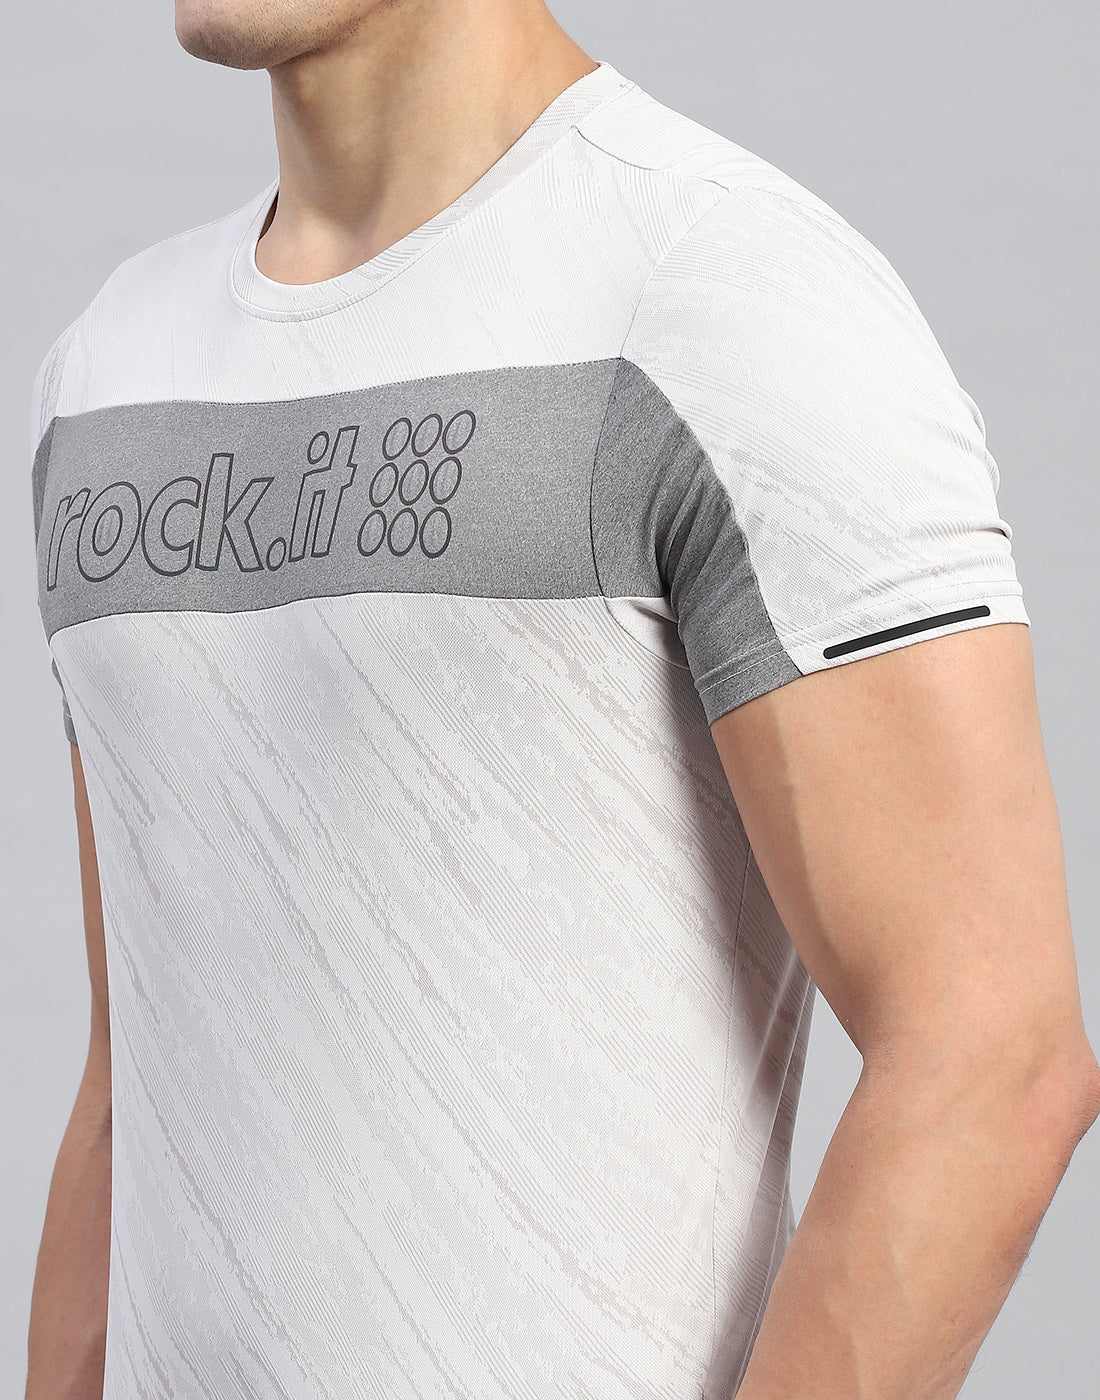 Men Grey Self Design Round Neck Half Sleeve T-Shirt